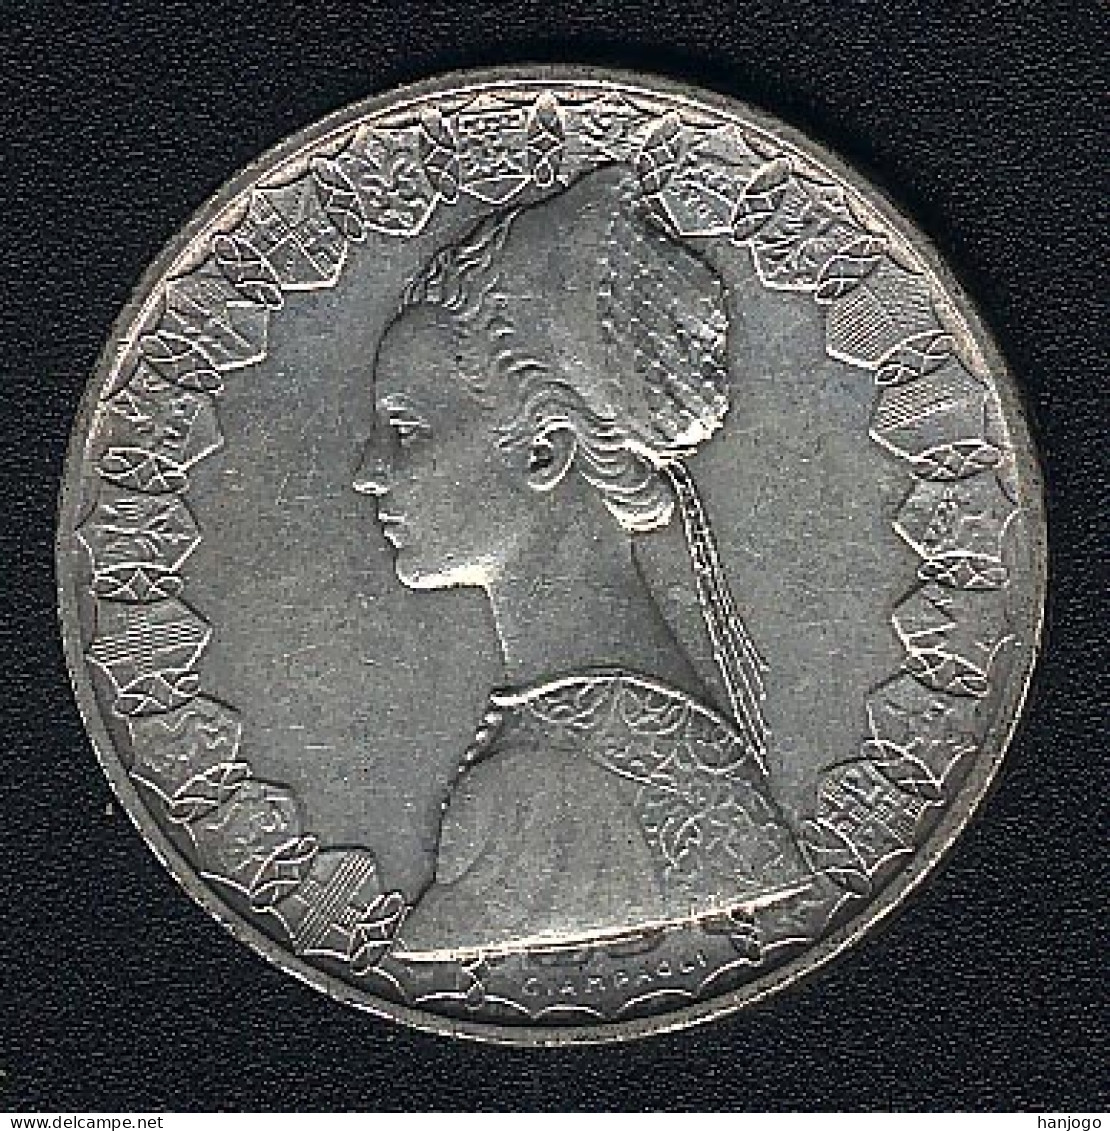 Italien, 500 Lire 1961, Silber, XF - 500 Lire